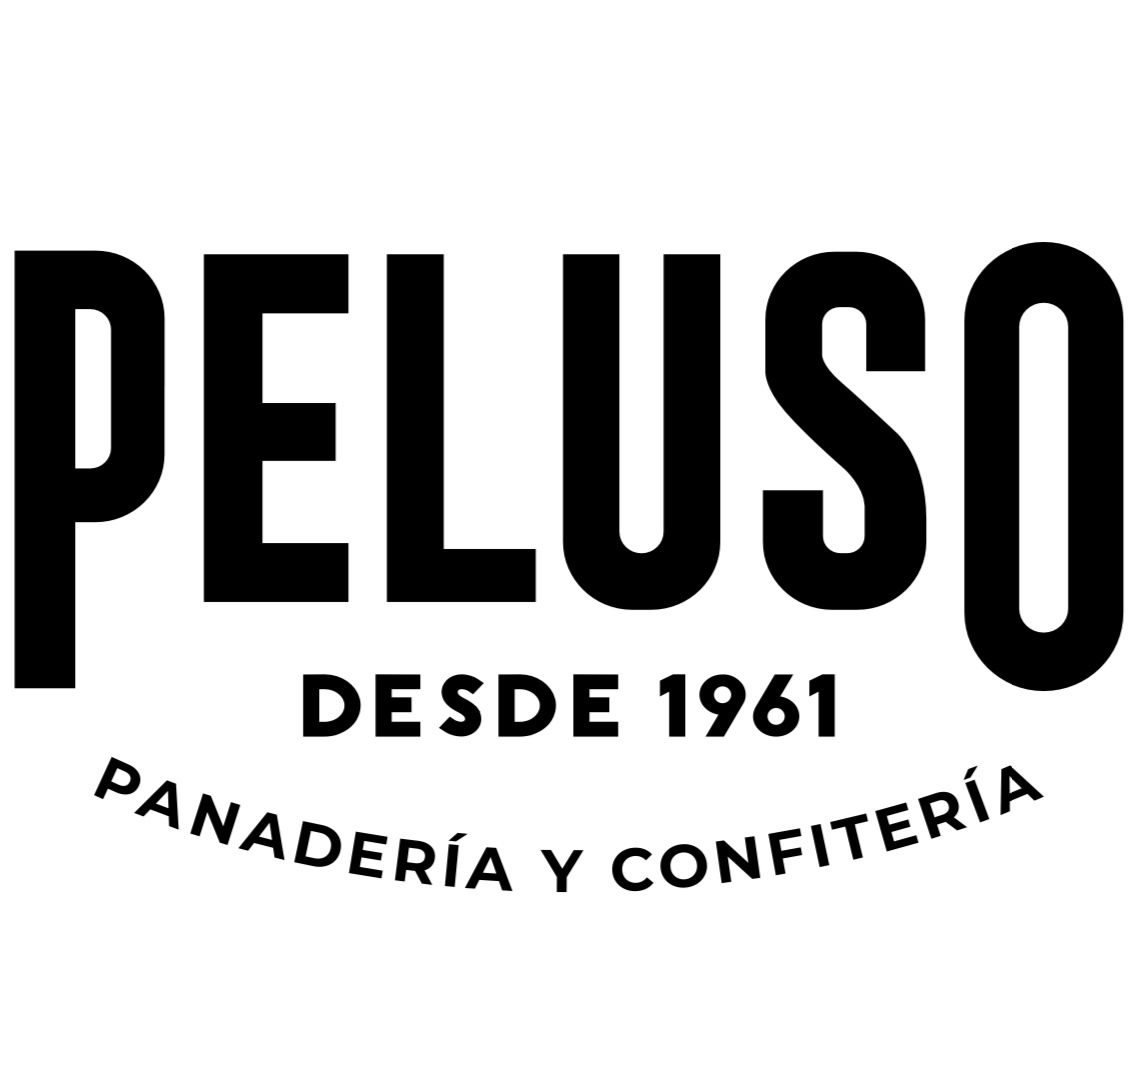 Peluso